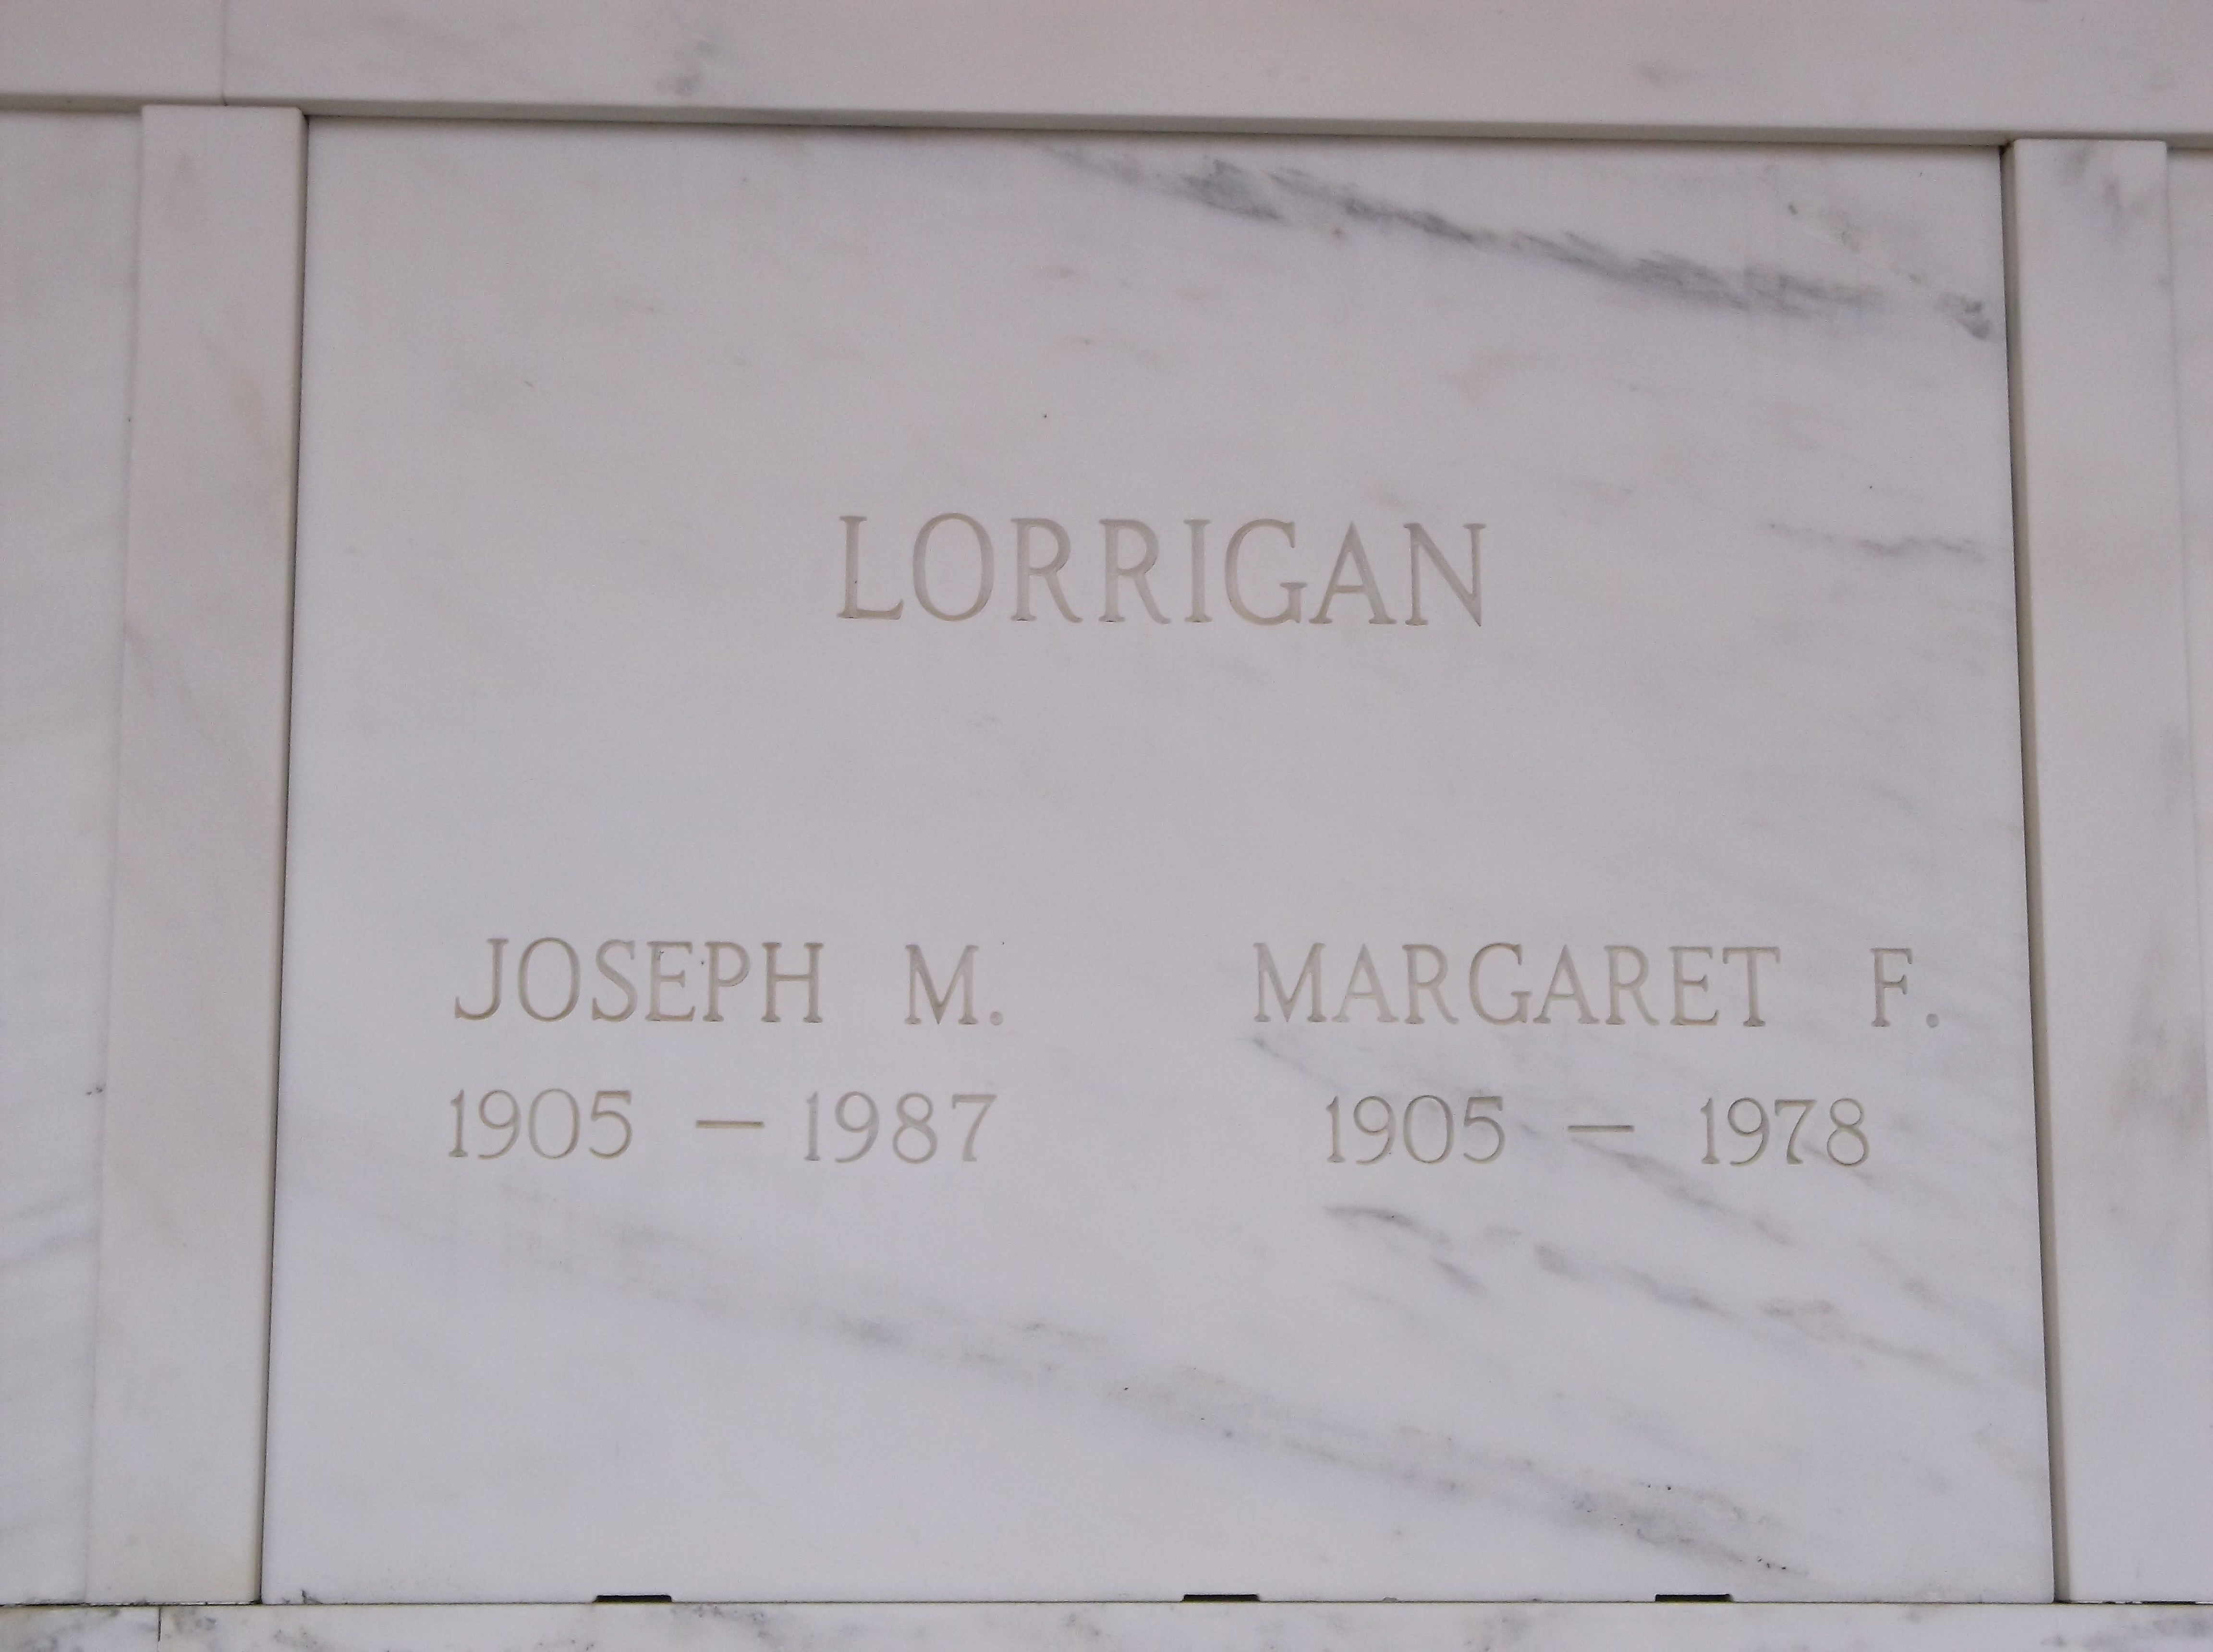 Joseph M Lorrigan